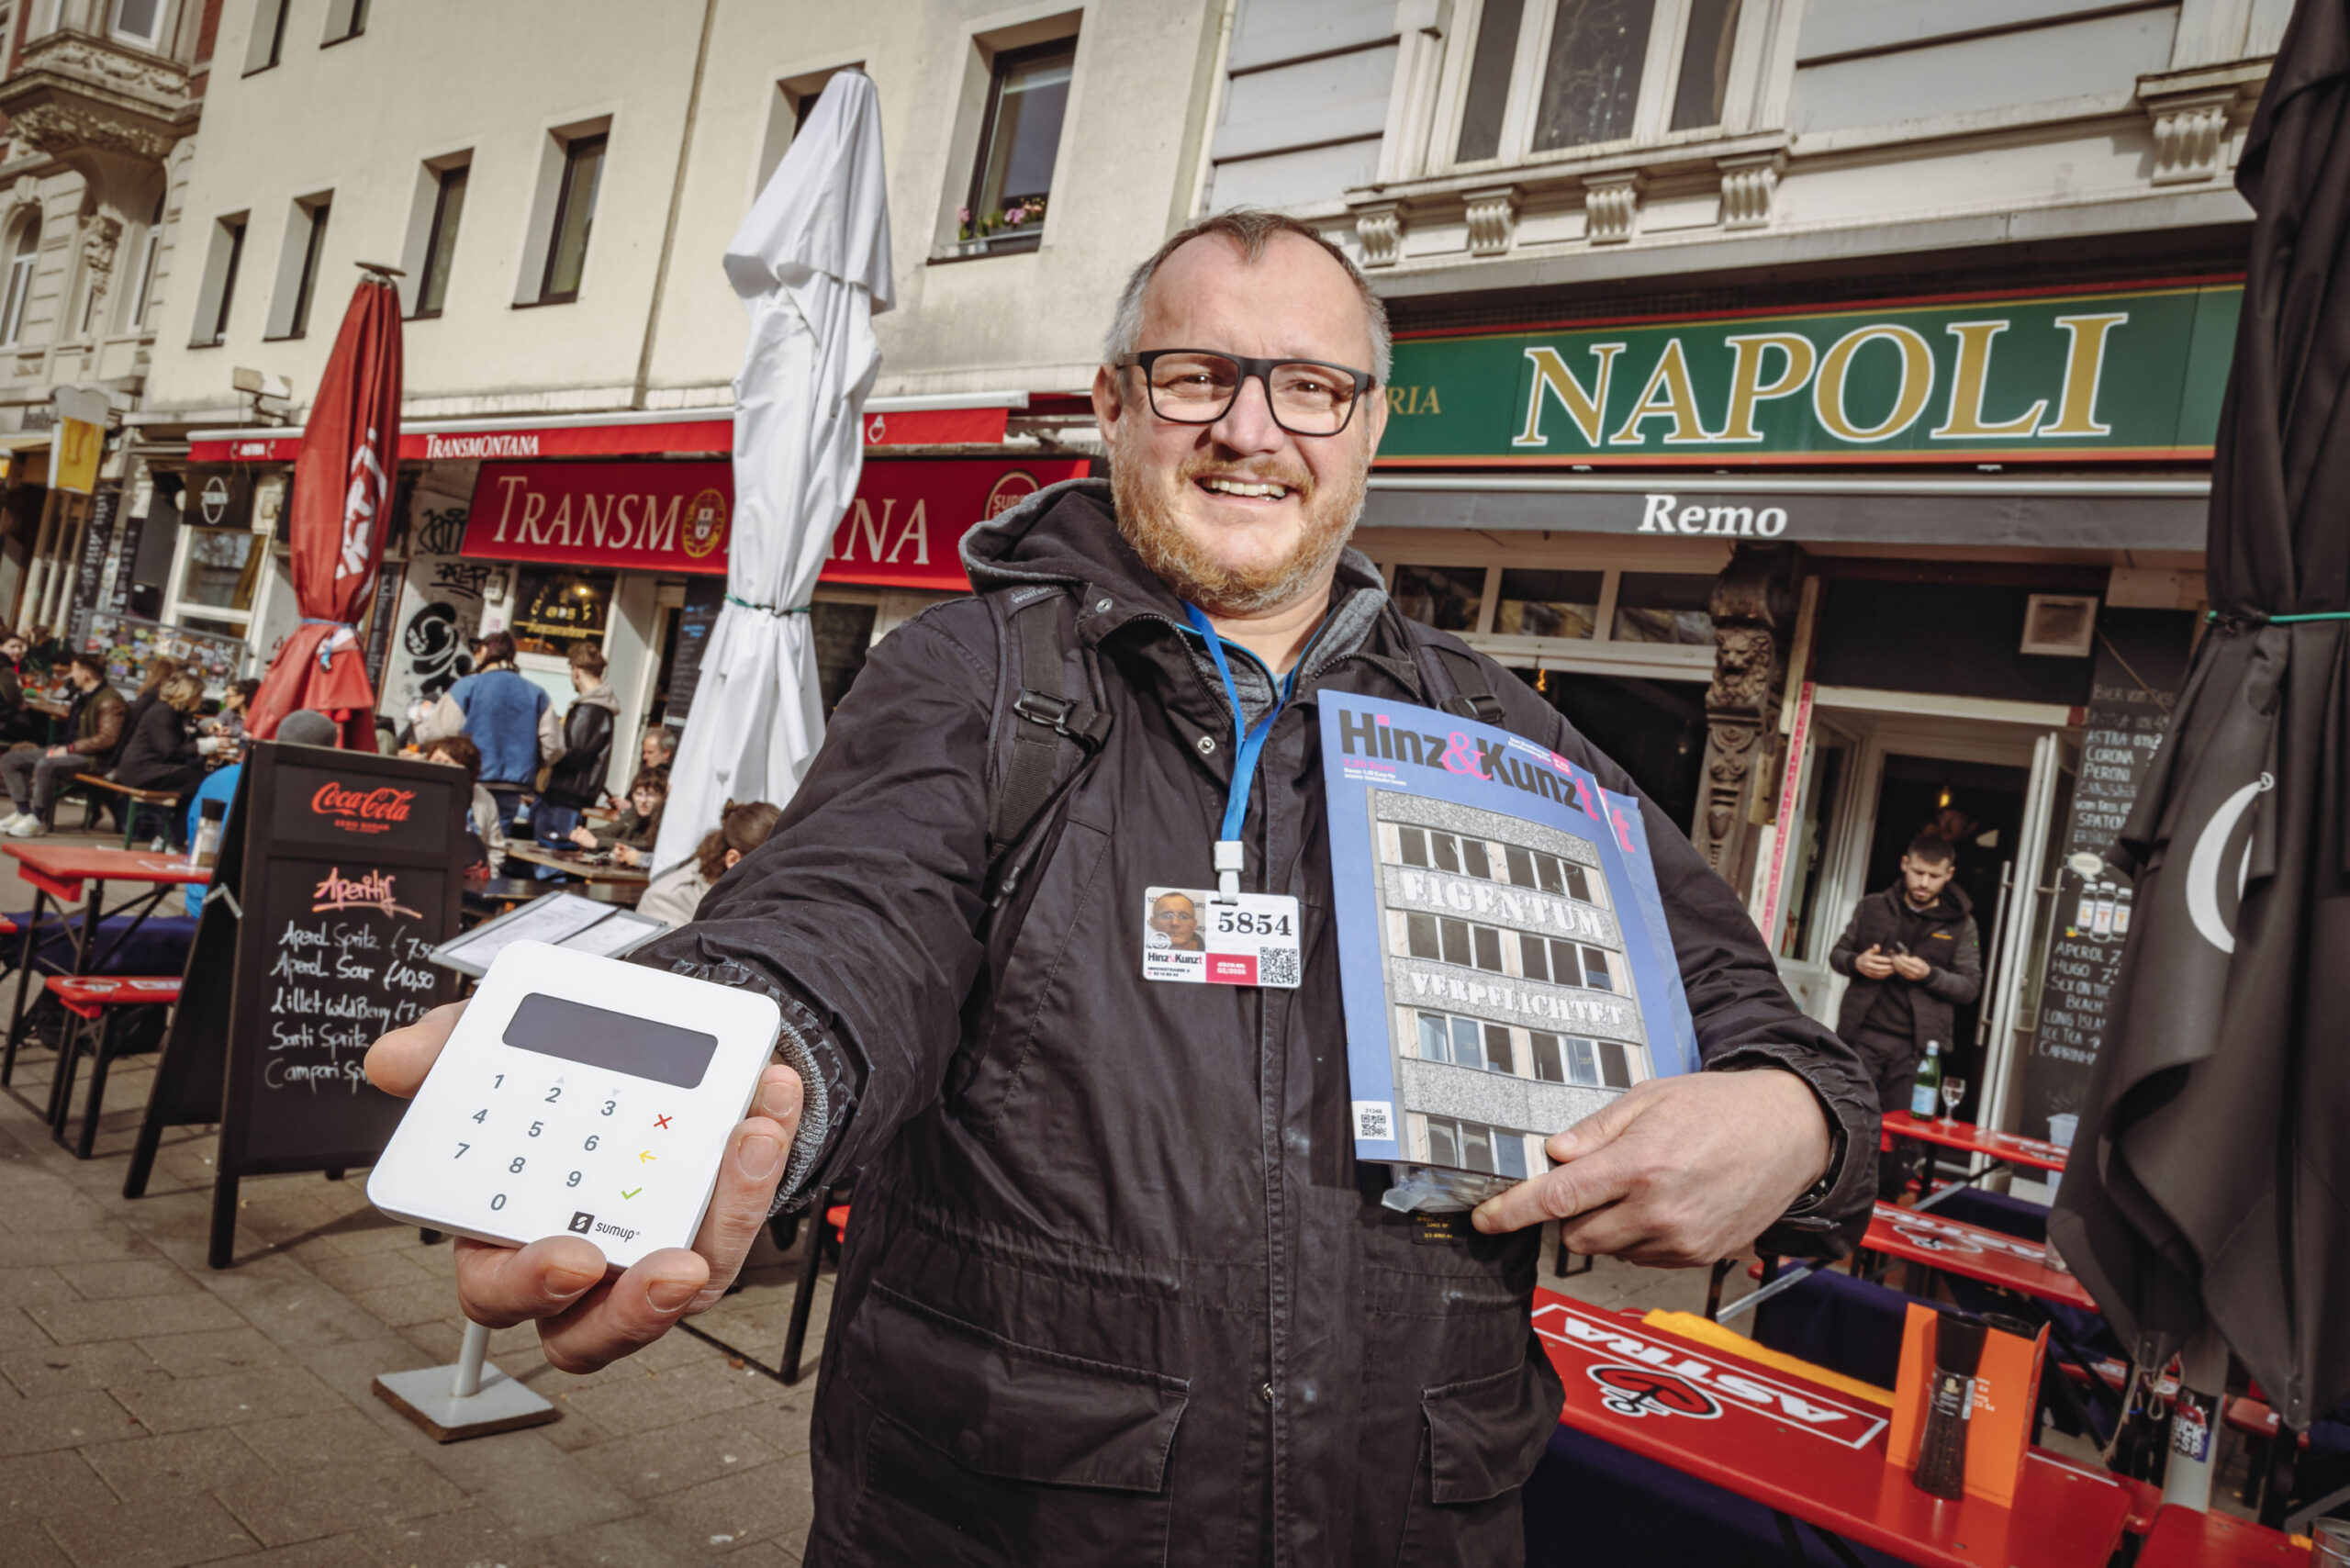 „Hinz&Kunzt“-Verkäufer Thomas mit seinem Kartenlesegerät und einigen Zeitschriften